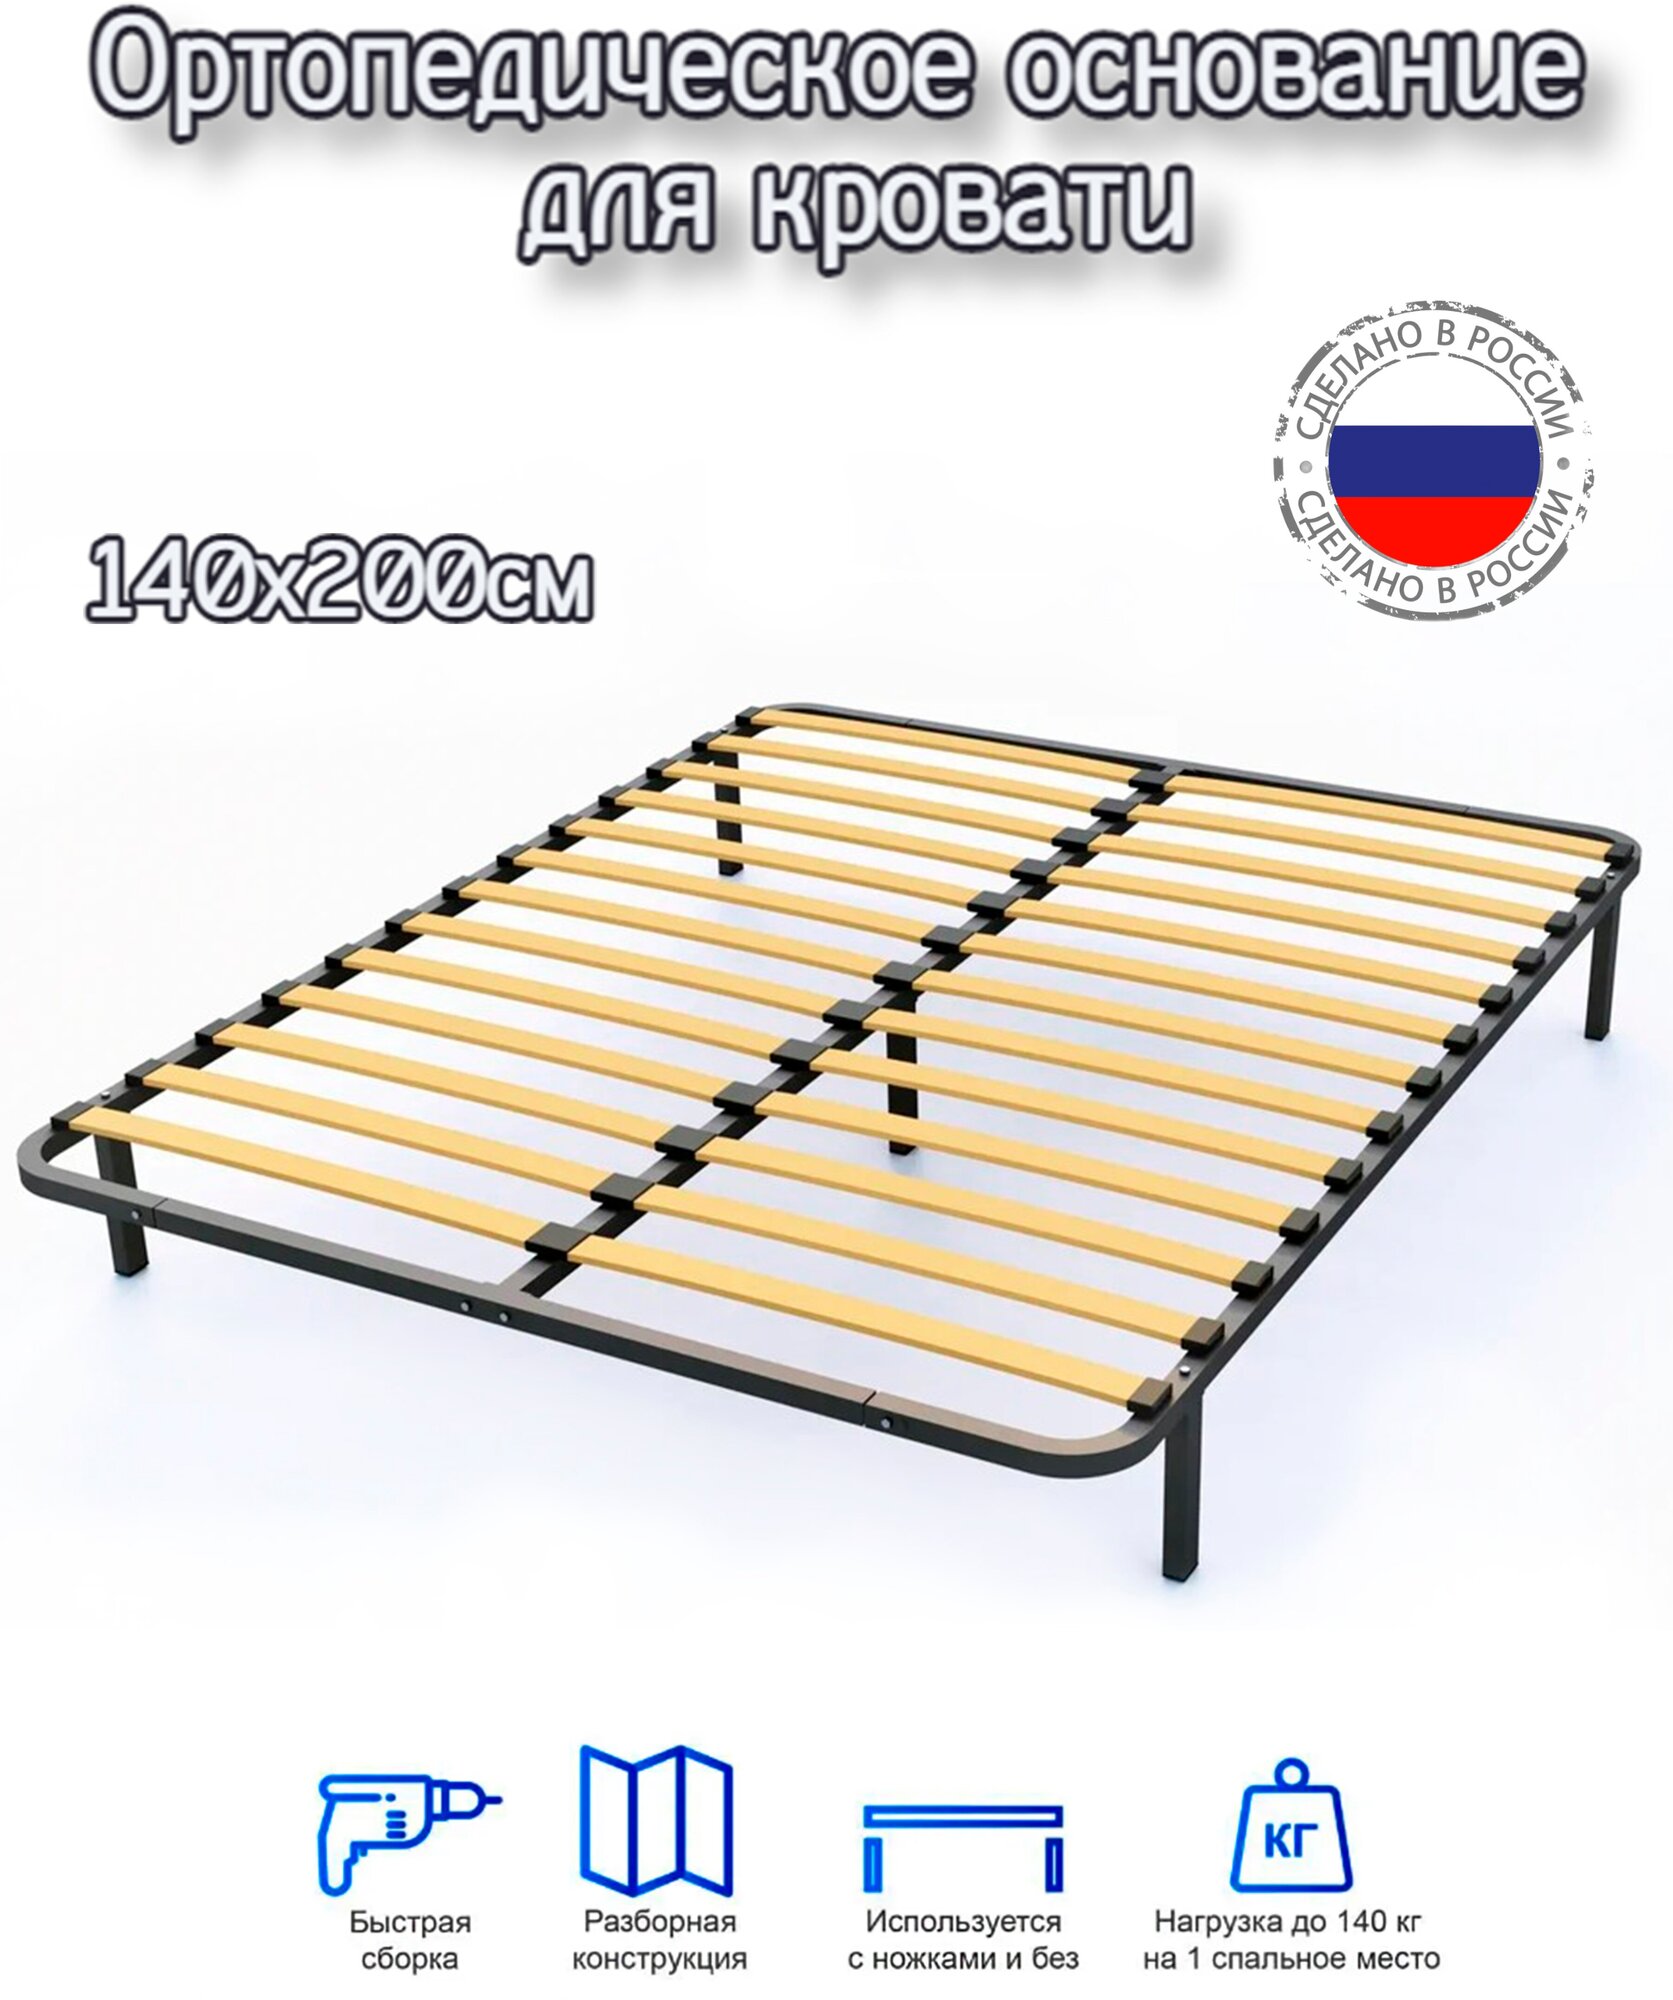 Разборное металлическое основание для кровати 140x200 с ламелиями и ножками